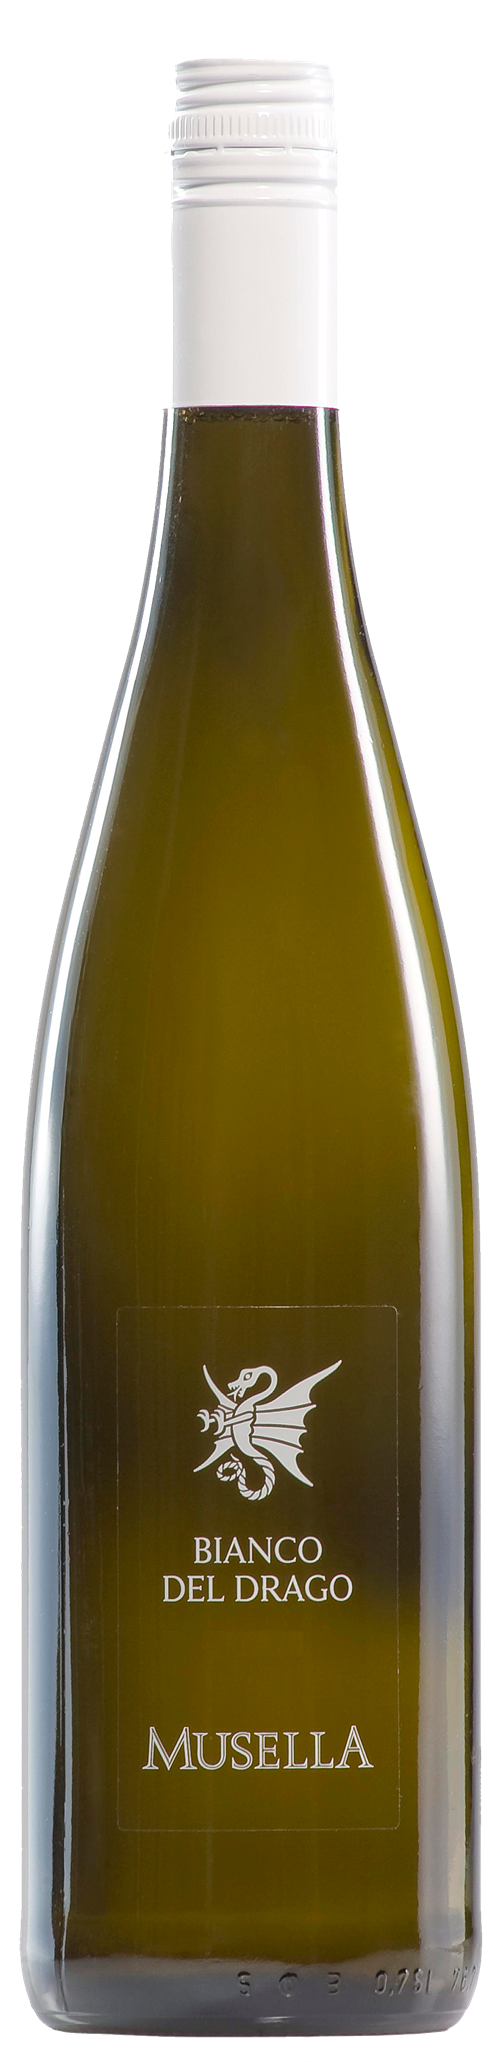 Bottle shot of 2012 Bianco del Drago